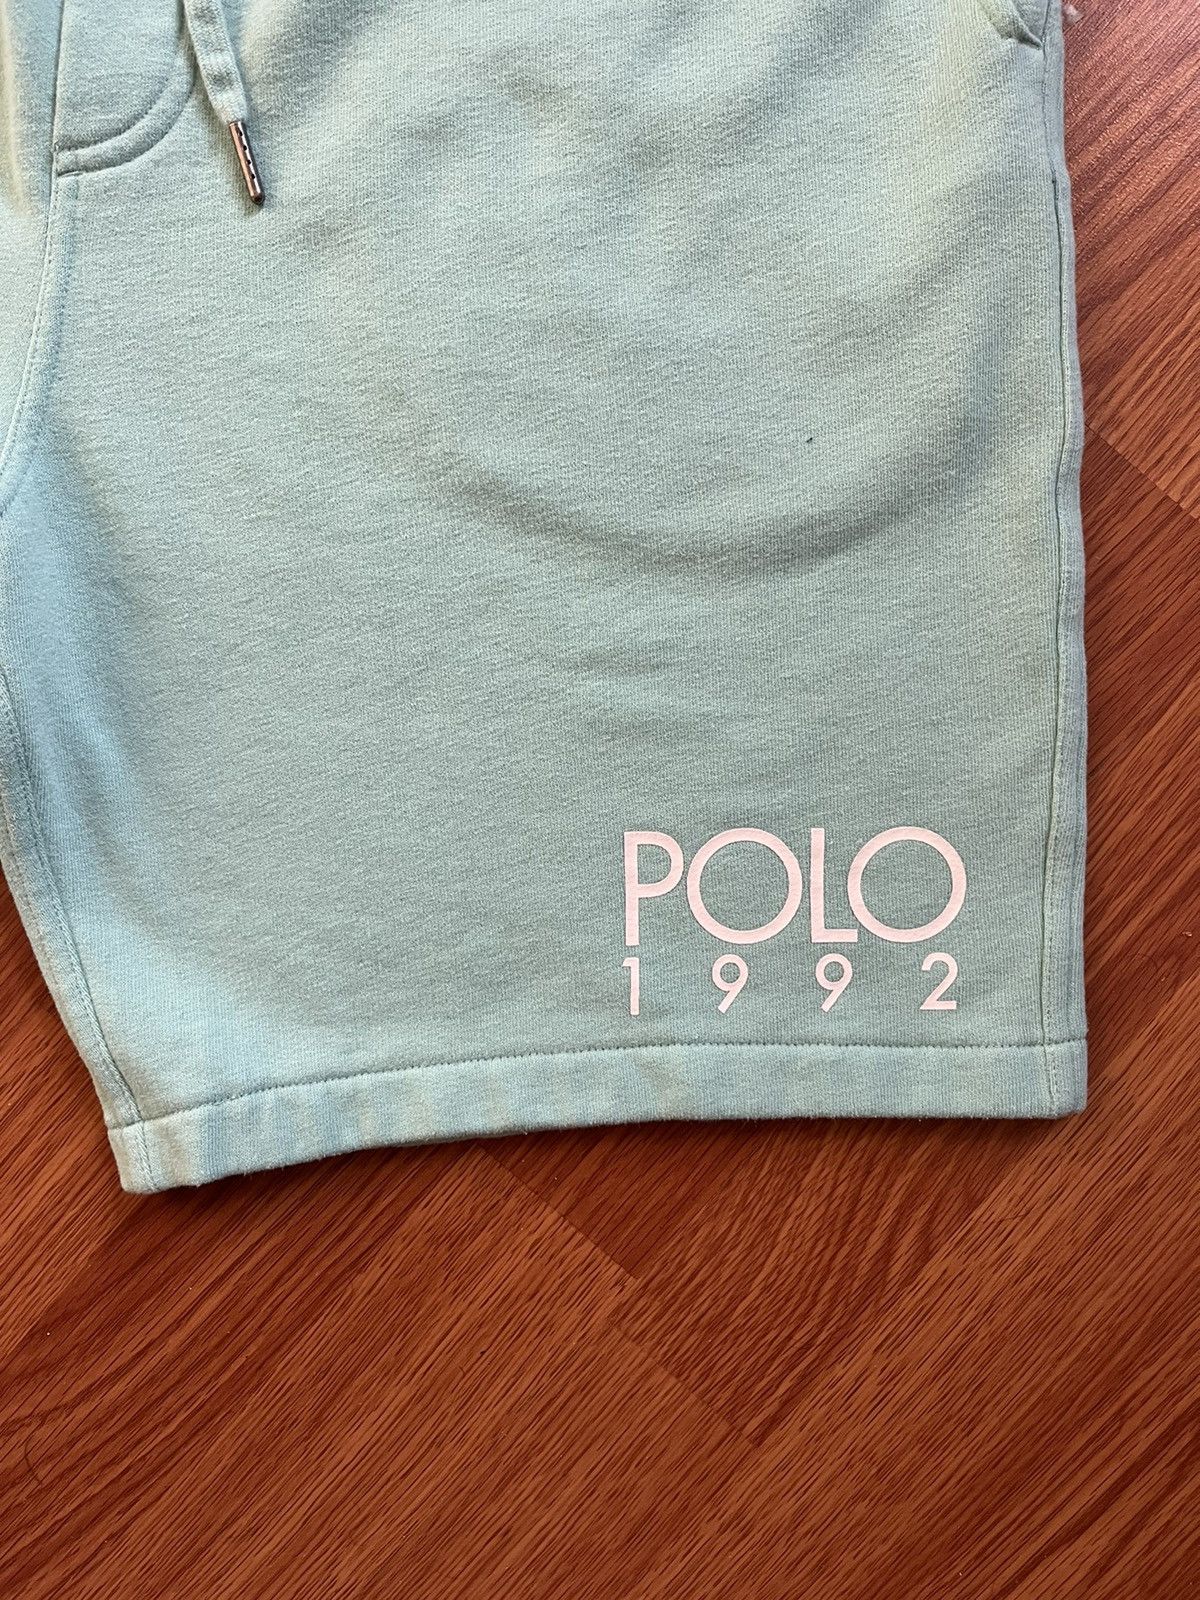 Polo Ralph Lauren Polo shorts Size US 36 / EU 52 - 2 Preview